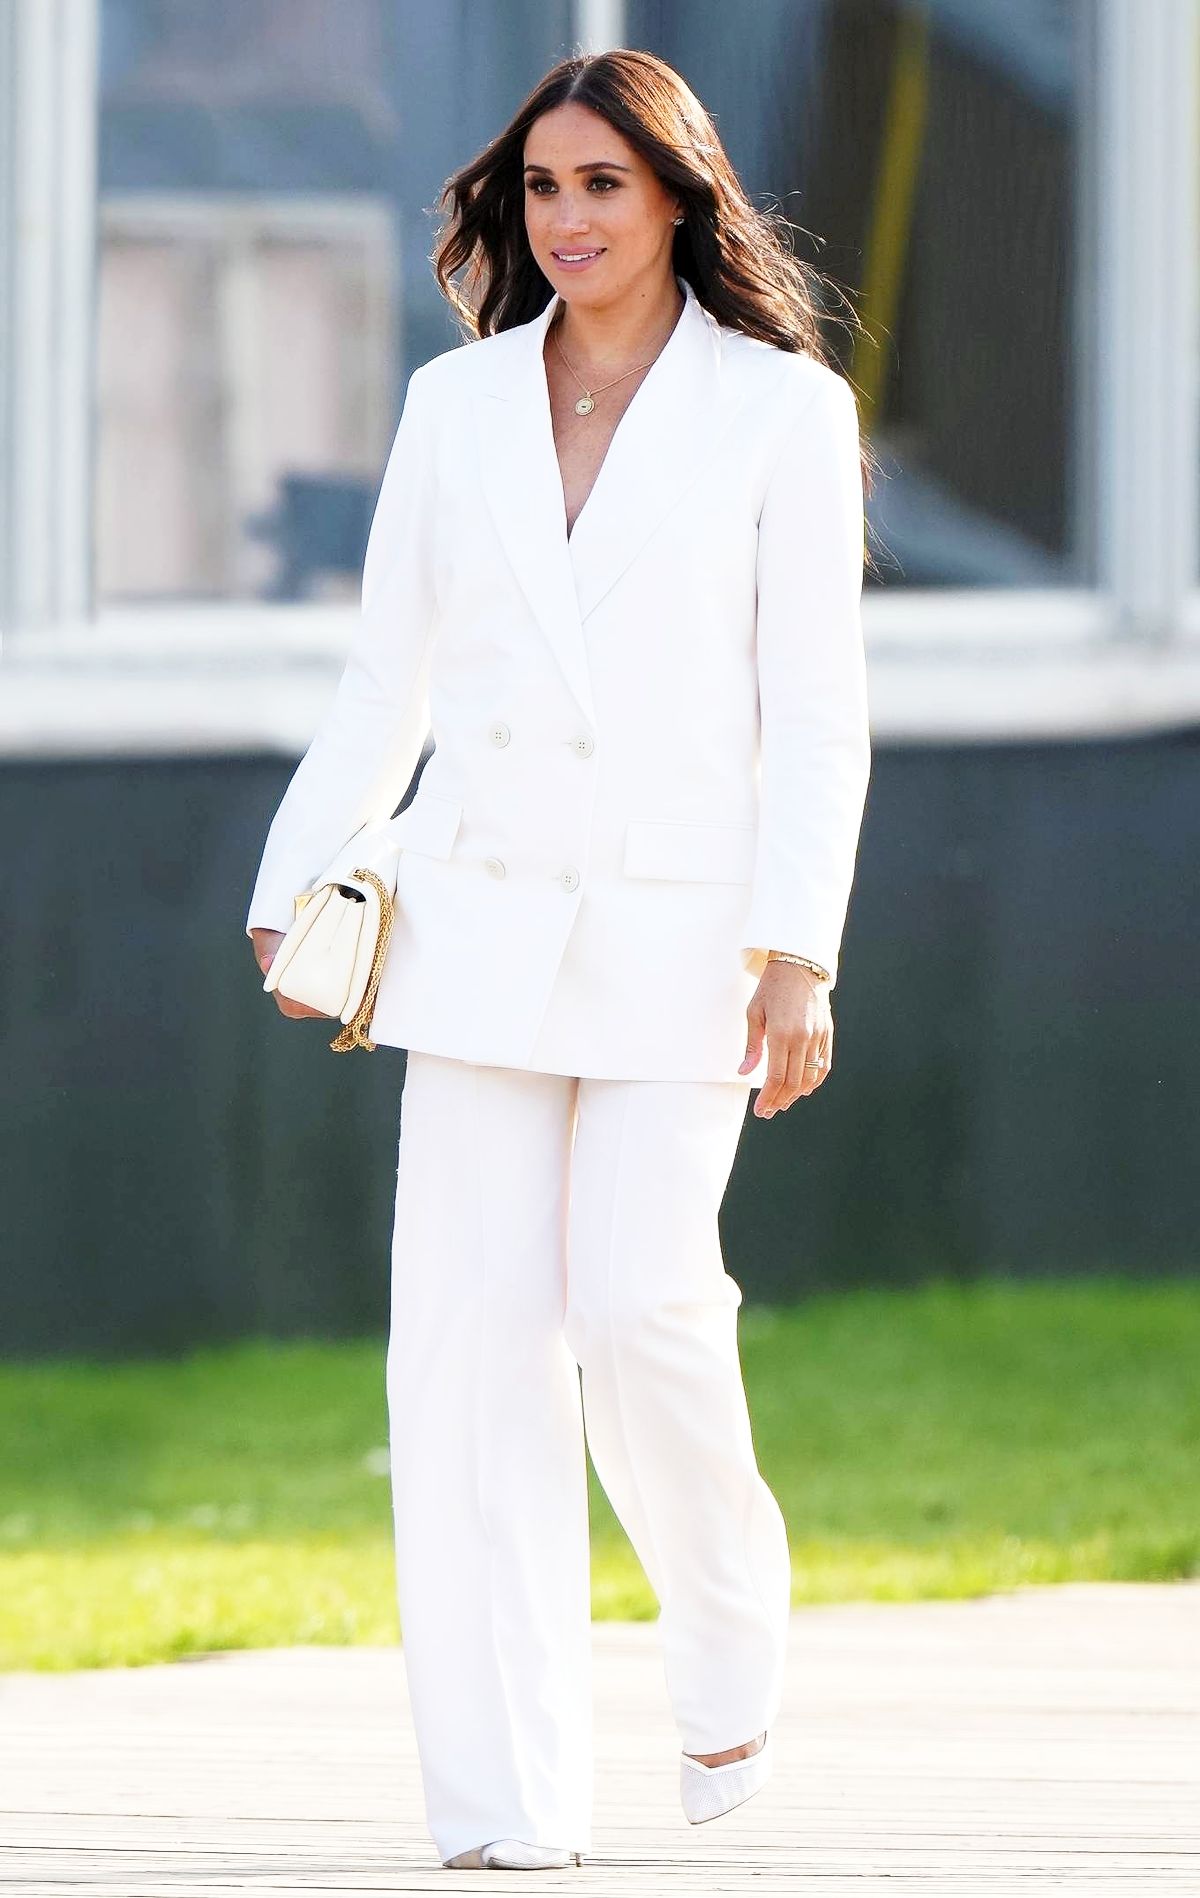 Меган Маркл, герцогиня Сассекская, на приеме в преддверии начала Игр Invictus Games 2020 в Гааге, 15 апреля 2022 г., фото 1